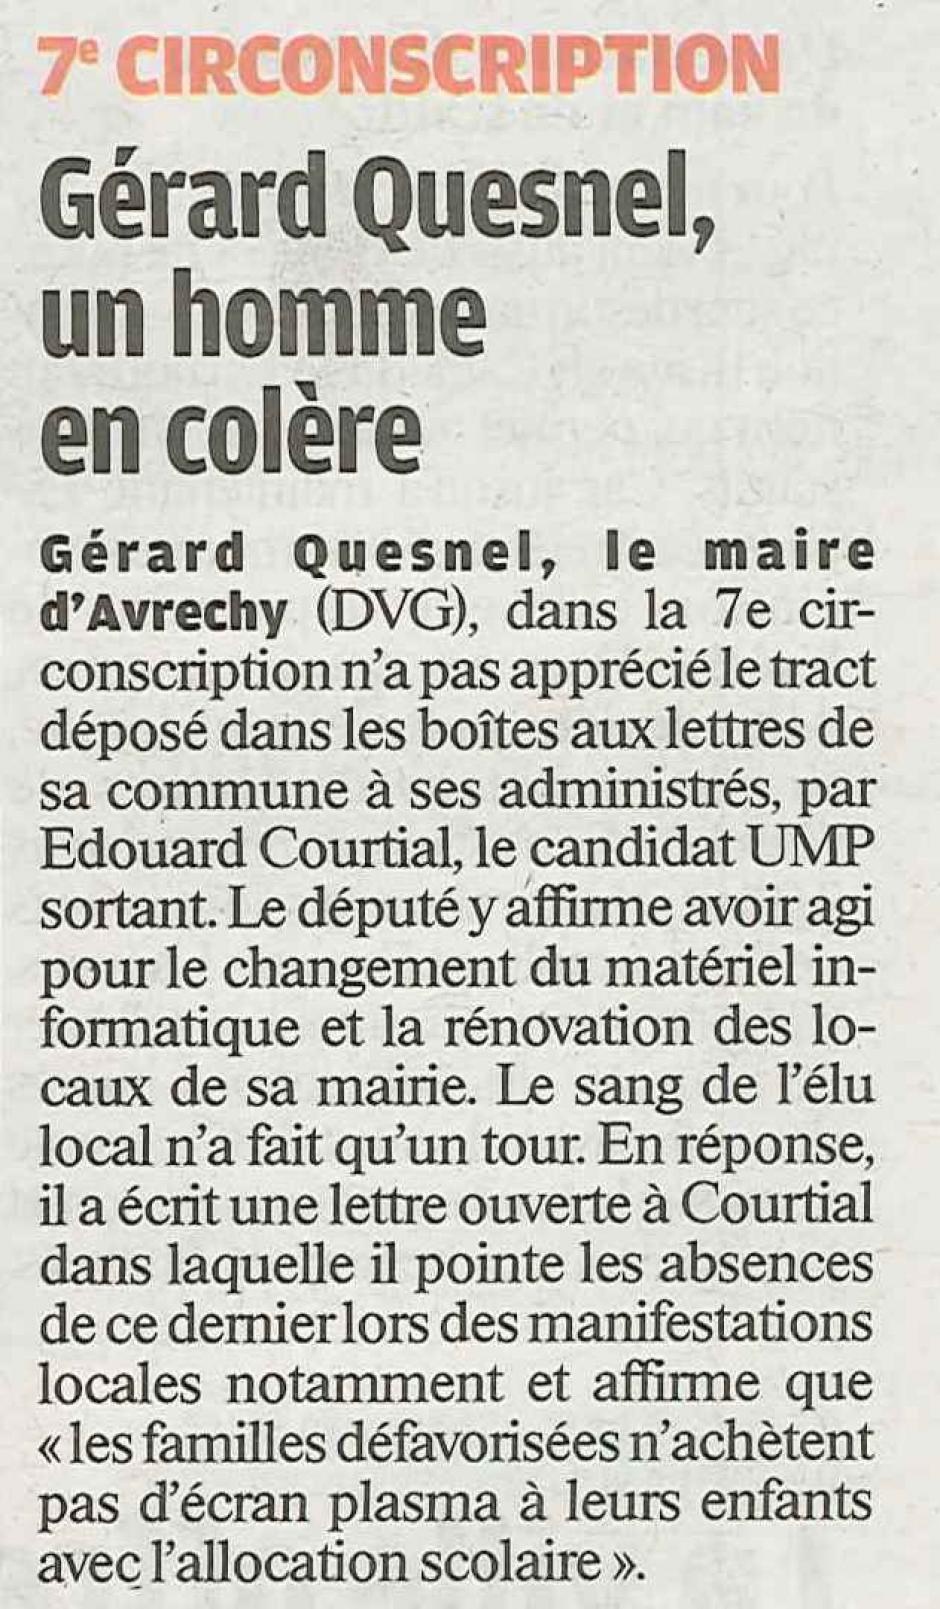 20120615-LeP-7e circo-Le maire Gérard Quesnel, un homme en colère contre Edouard Courtial